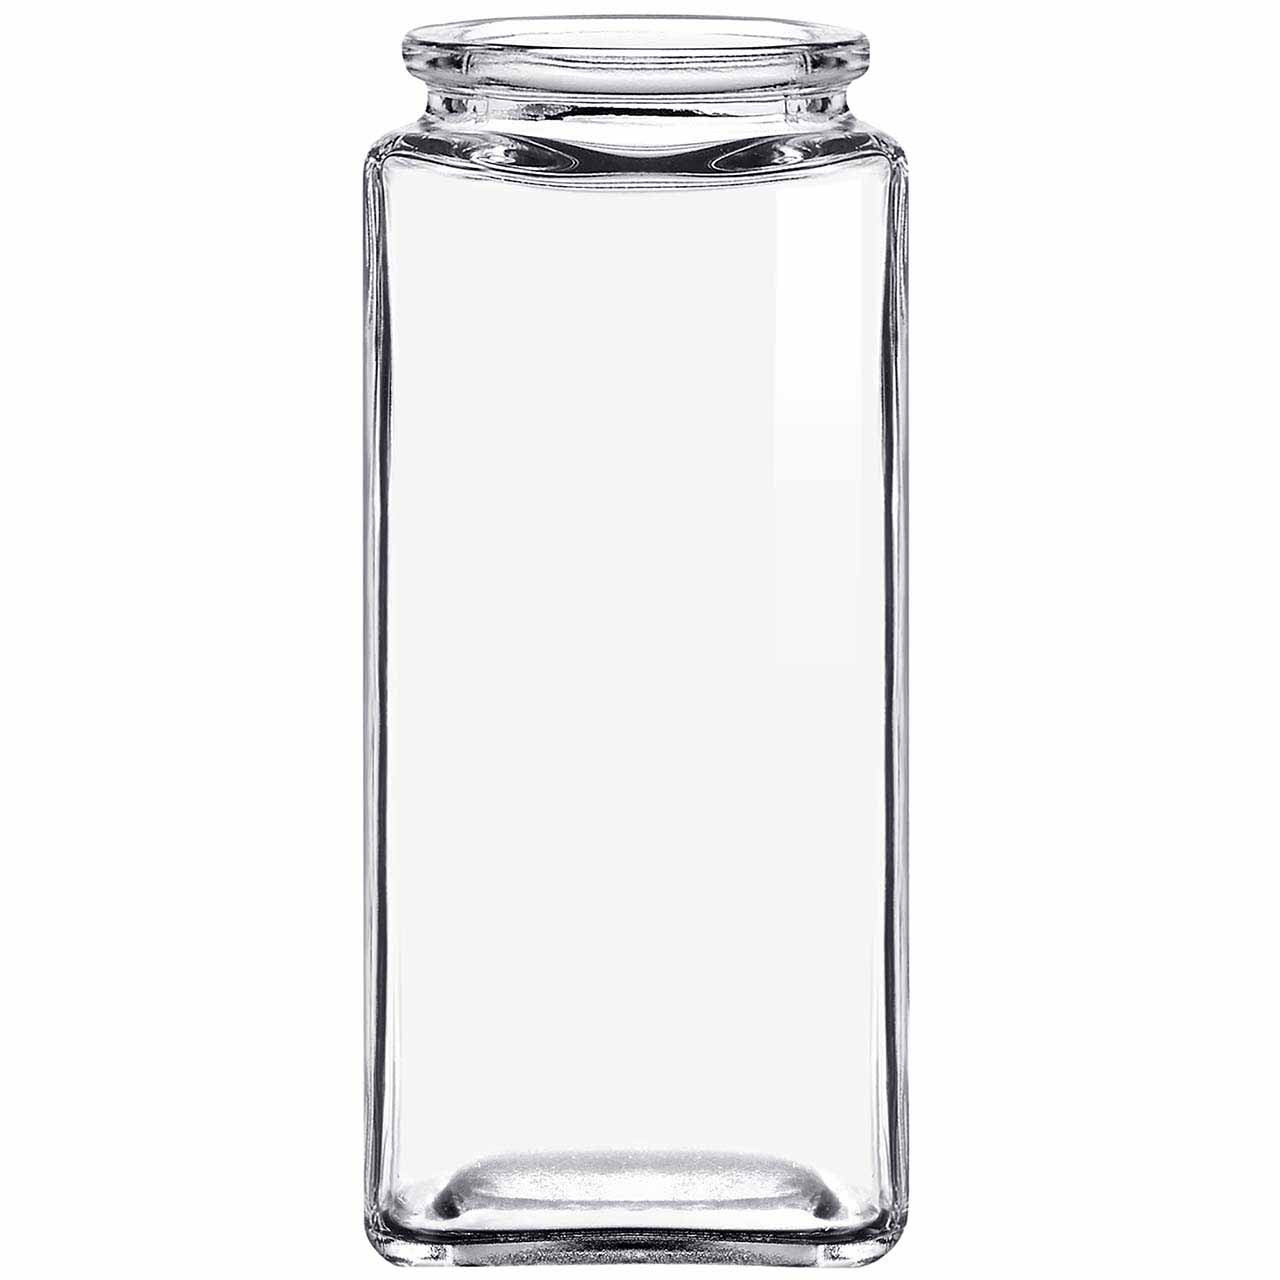 RECYCLED GLASS SPICE JAR - 1/4 kg.